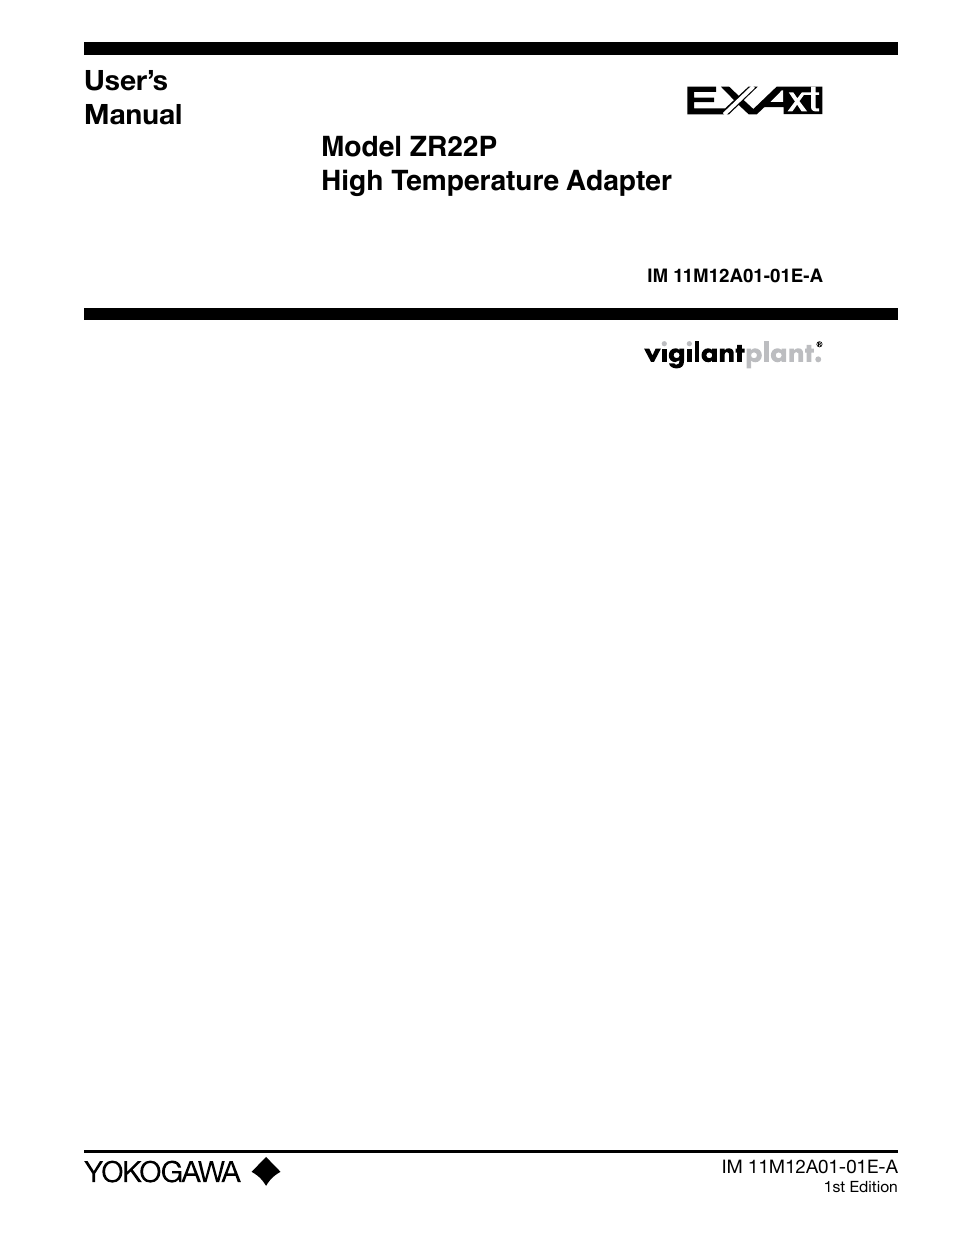 Yokogawa Single Channel Oxygen Analyzer System ZR22/ZR402 User Manual | 34 pages